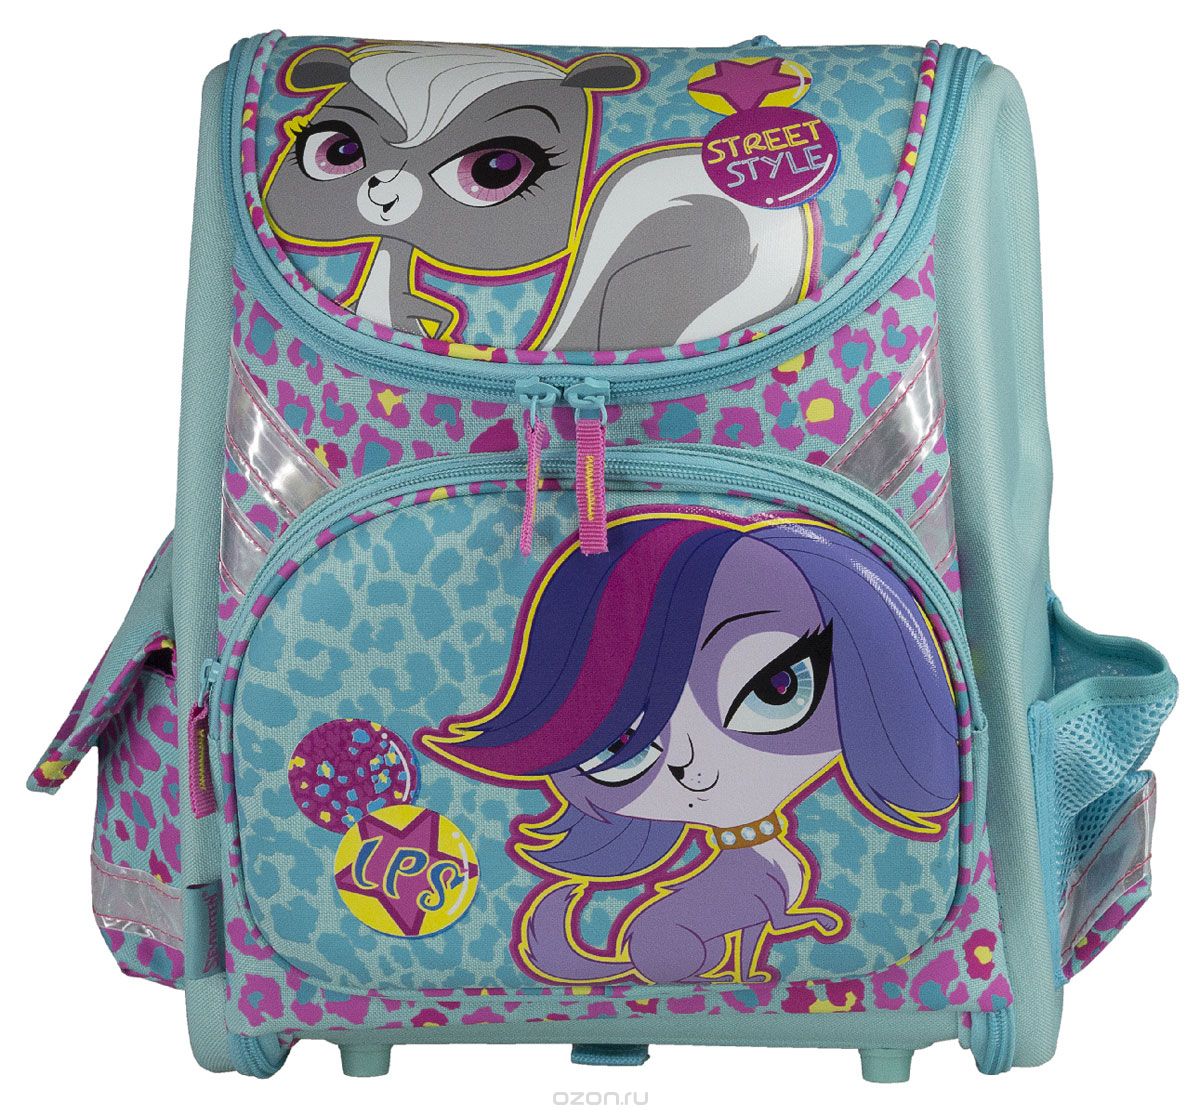 Ранец школьный Littlest Pet Shop Kinderline , цвет: бирюзовый рюкзак на молнии 3 наружных кармана бирюзовый